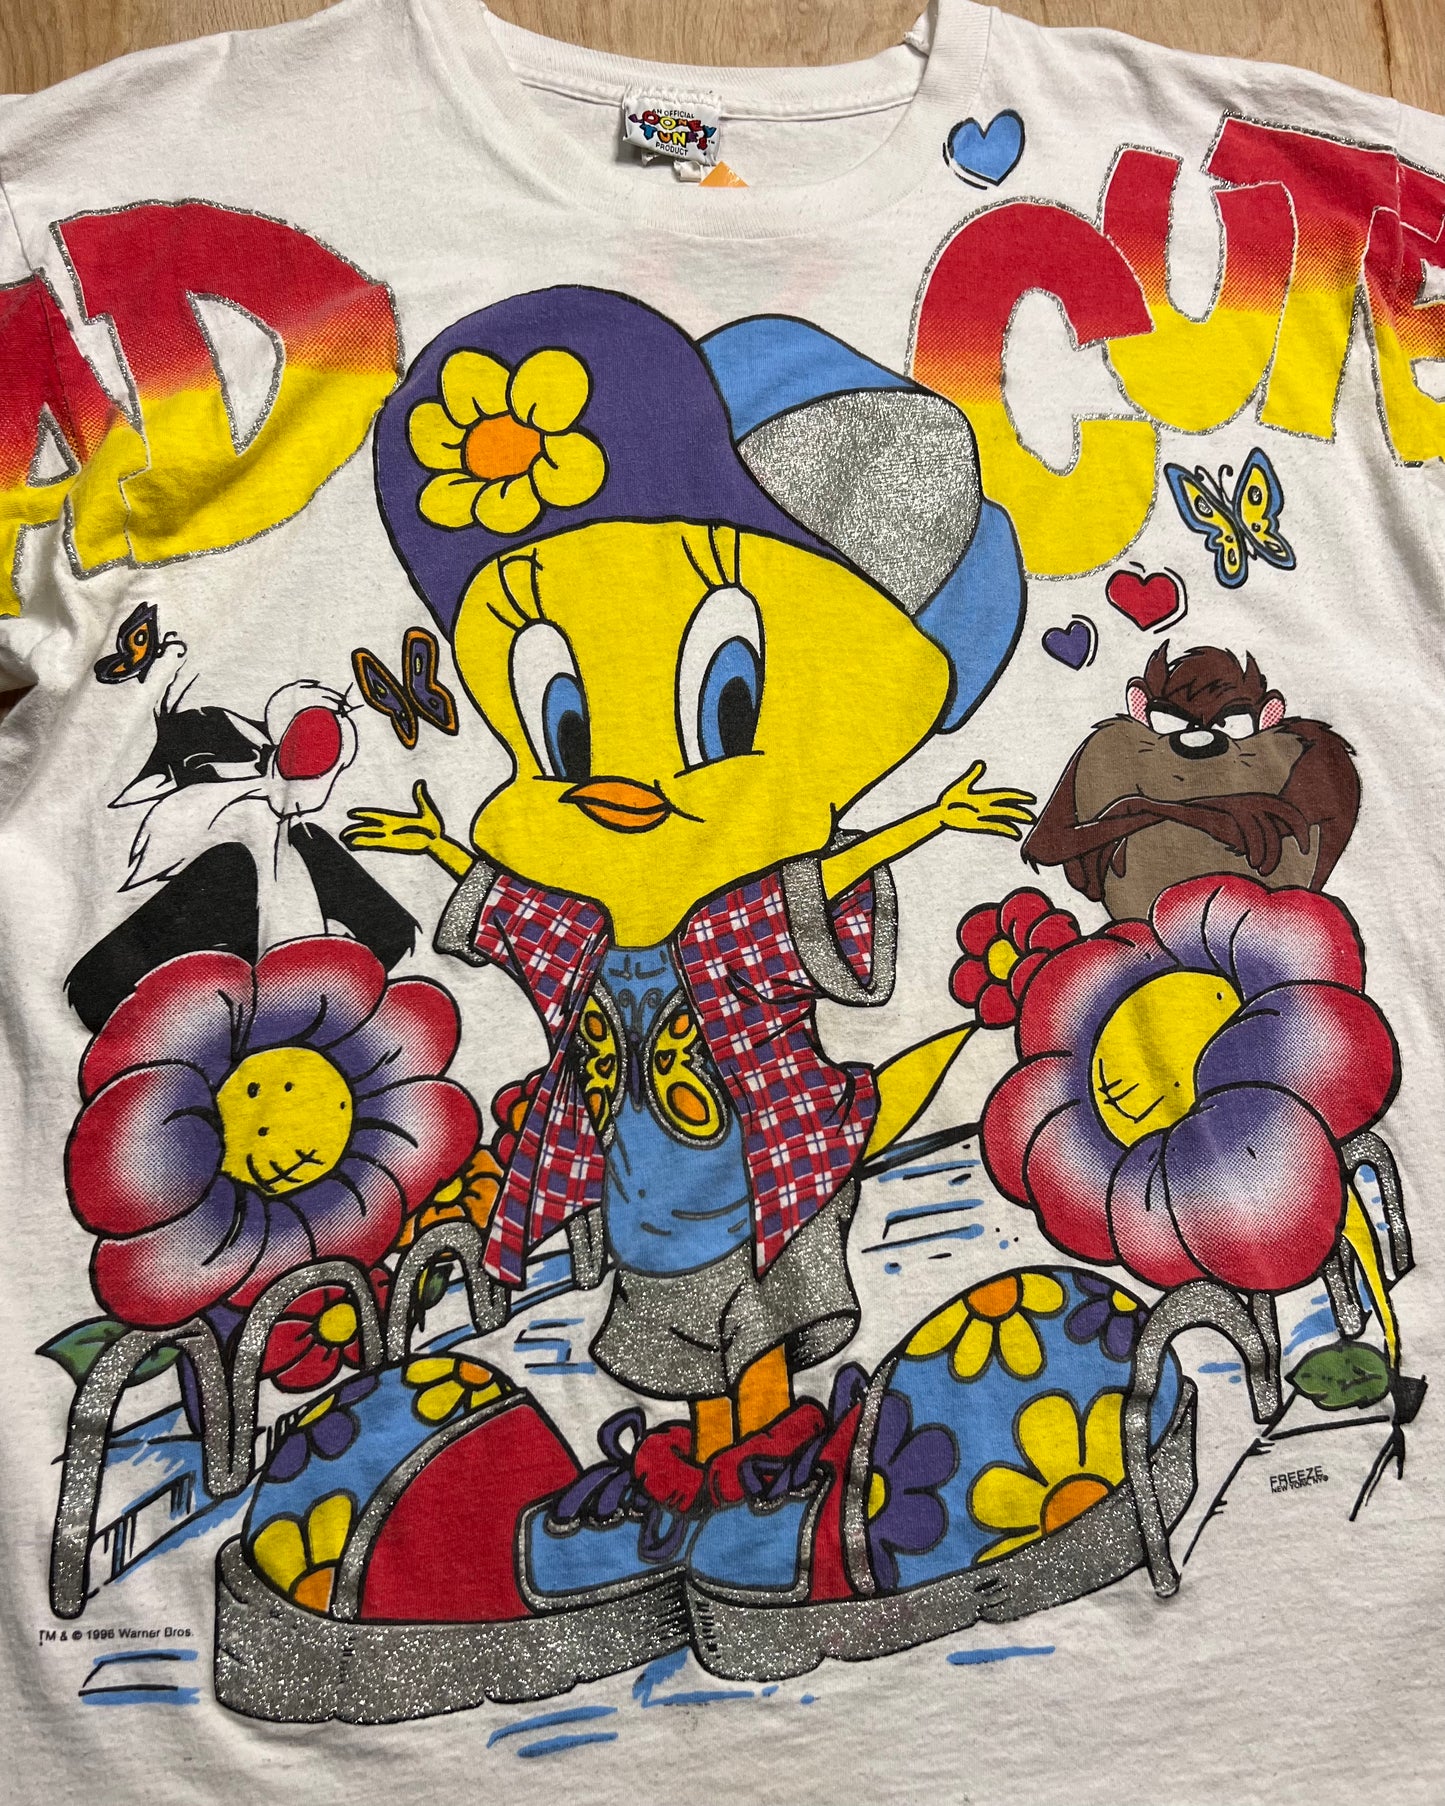 1996 Tweety Bird "Mad Cute" Looney Tunes Single Stitch T-Shirt